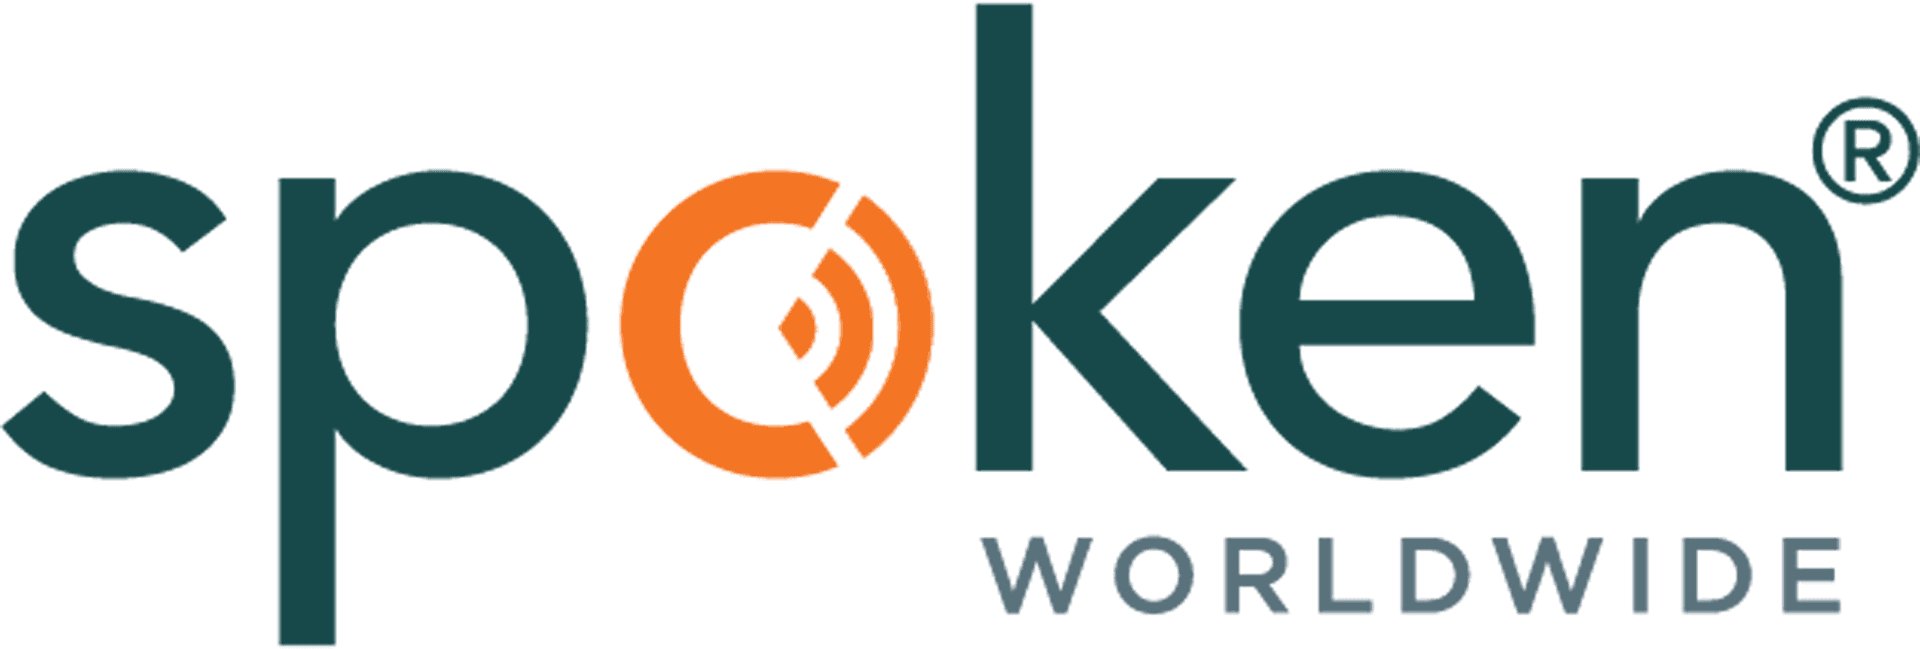 Spoken Worldwide Logo PNG